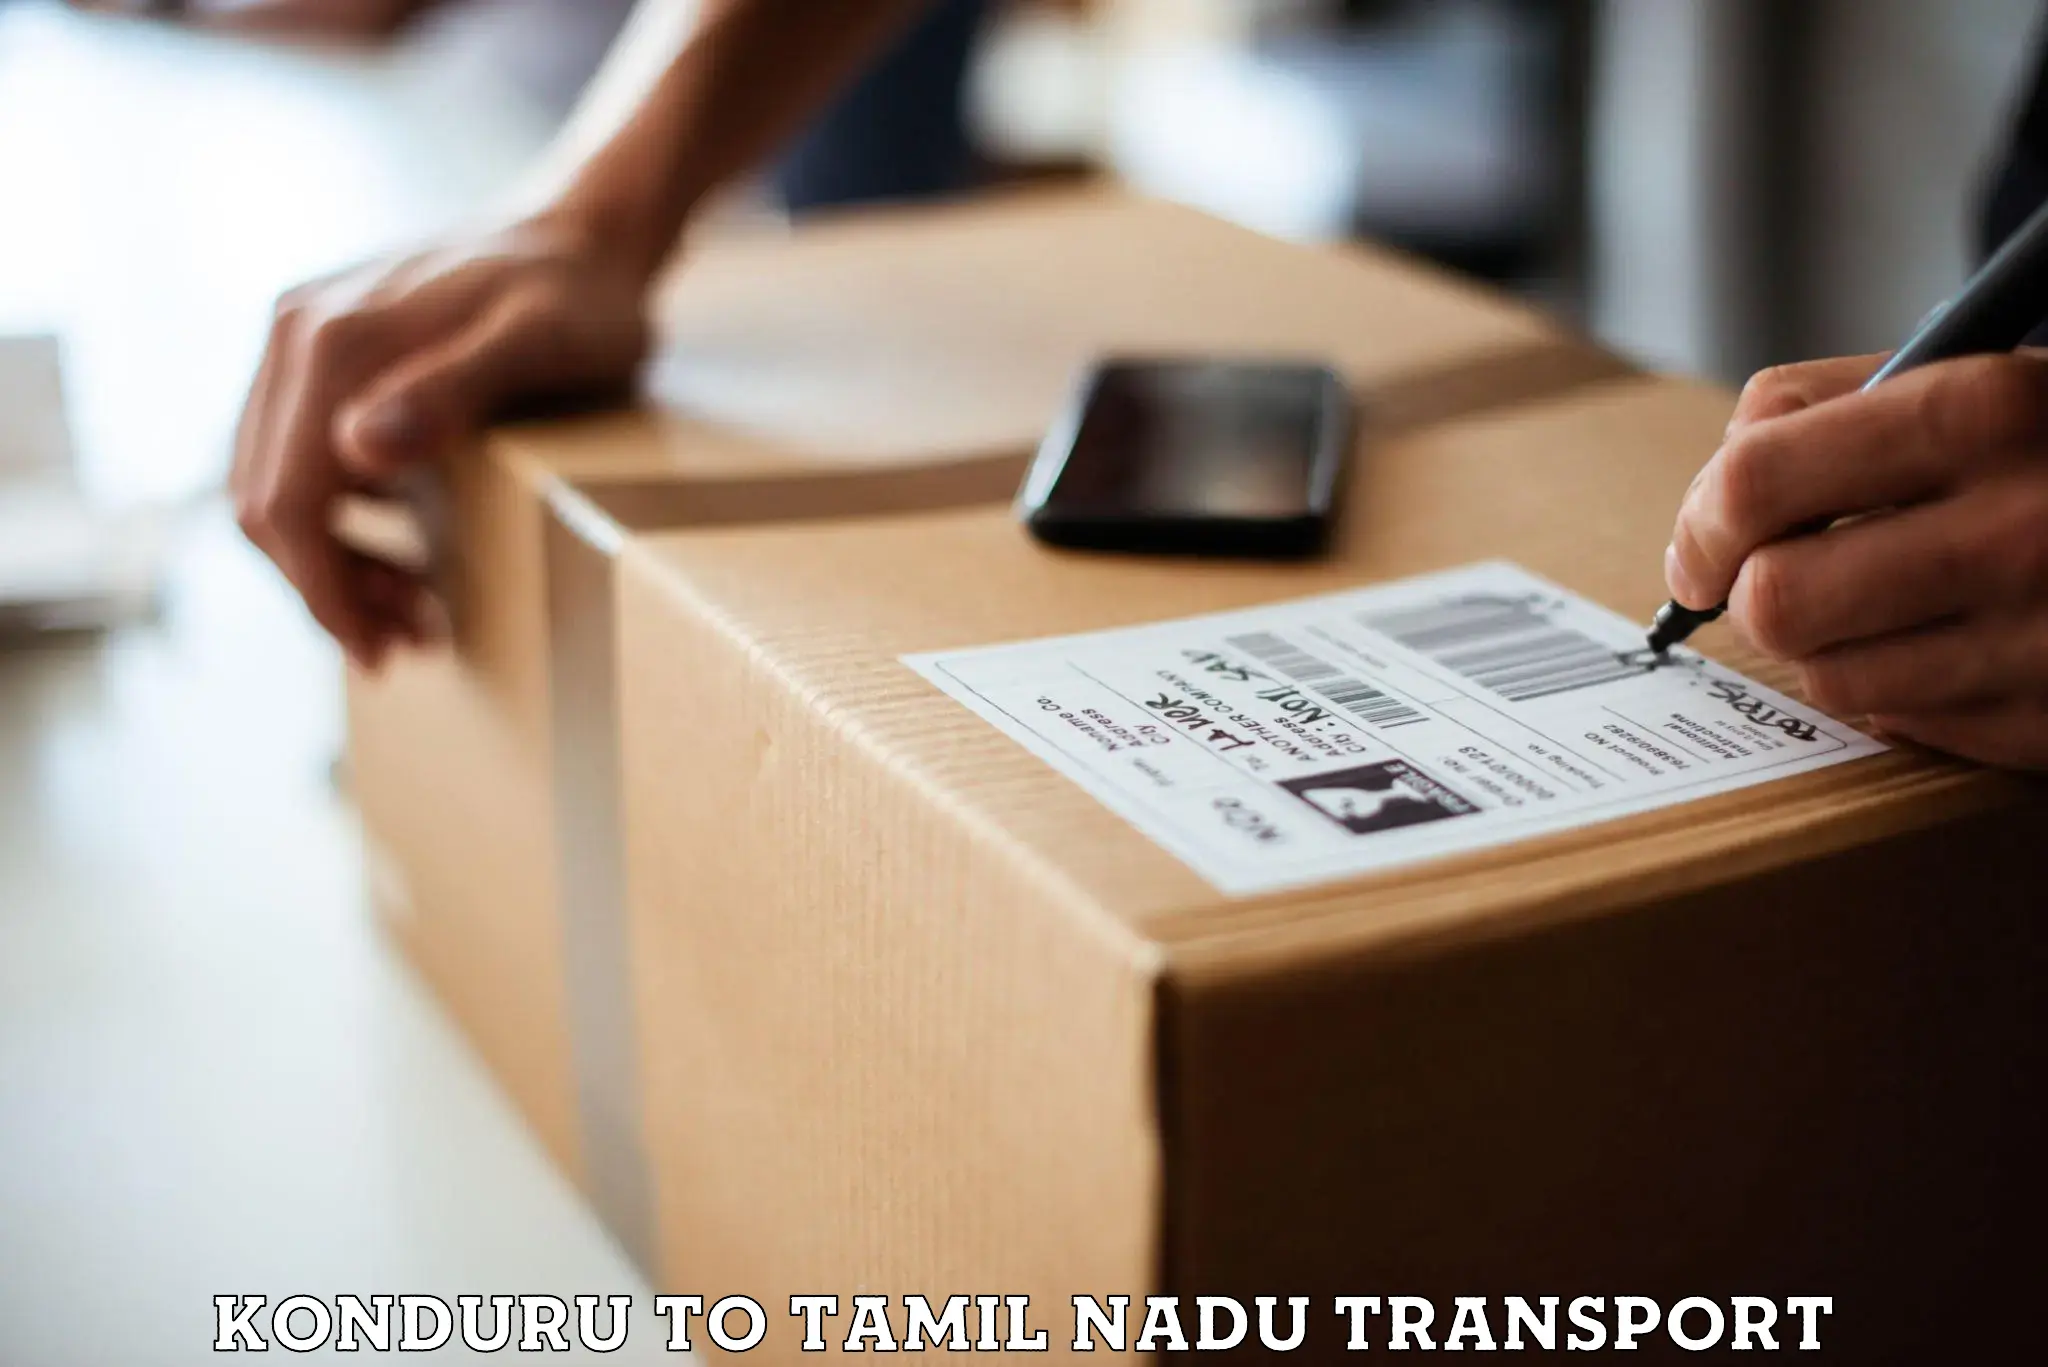 Pick up transport service Konduru to Palani